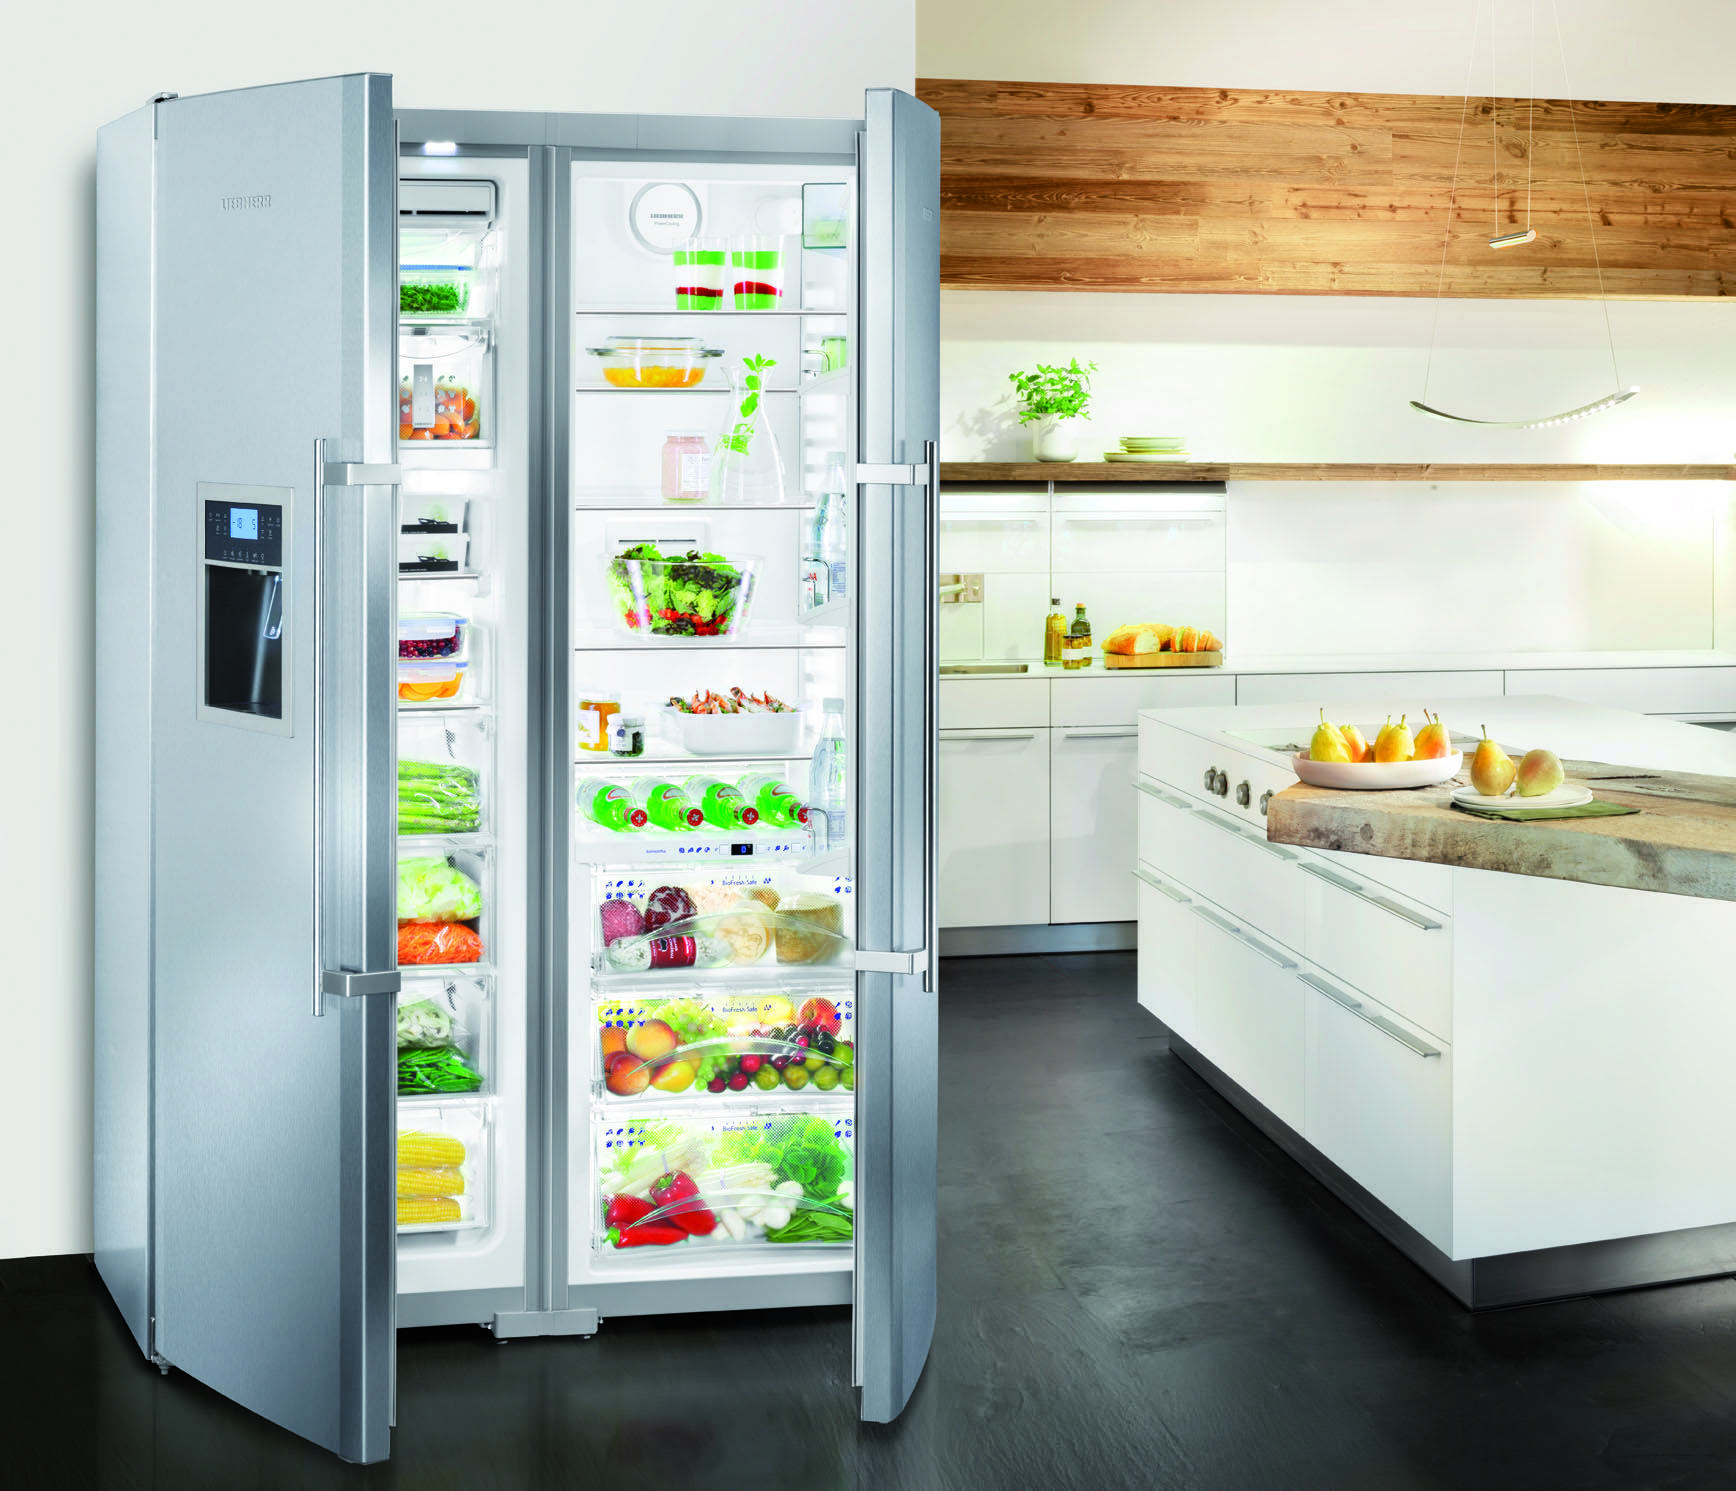 Холодильники Liebherr: лучшая 7-ка моделей + отзывы о производителе